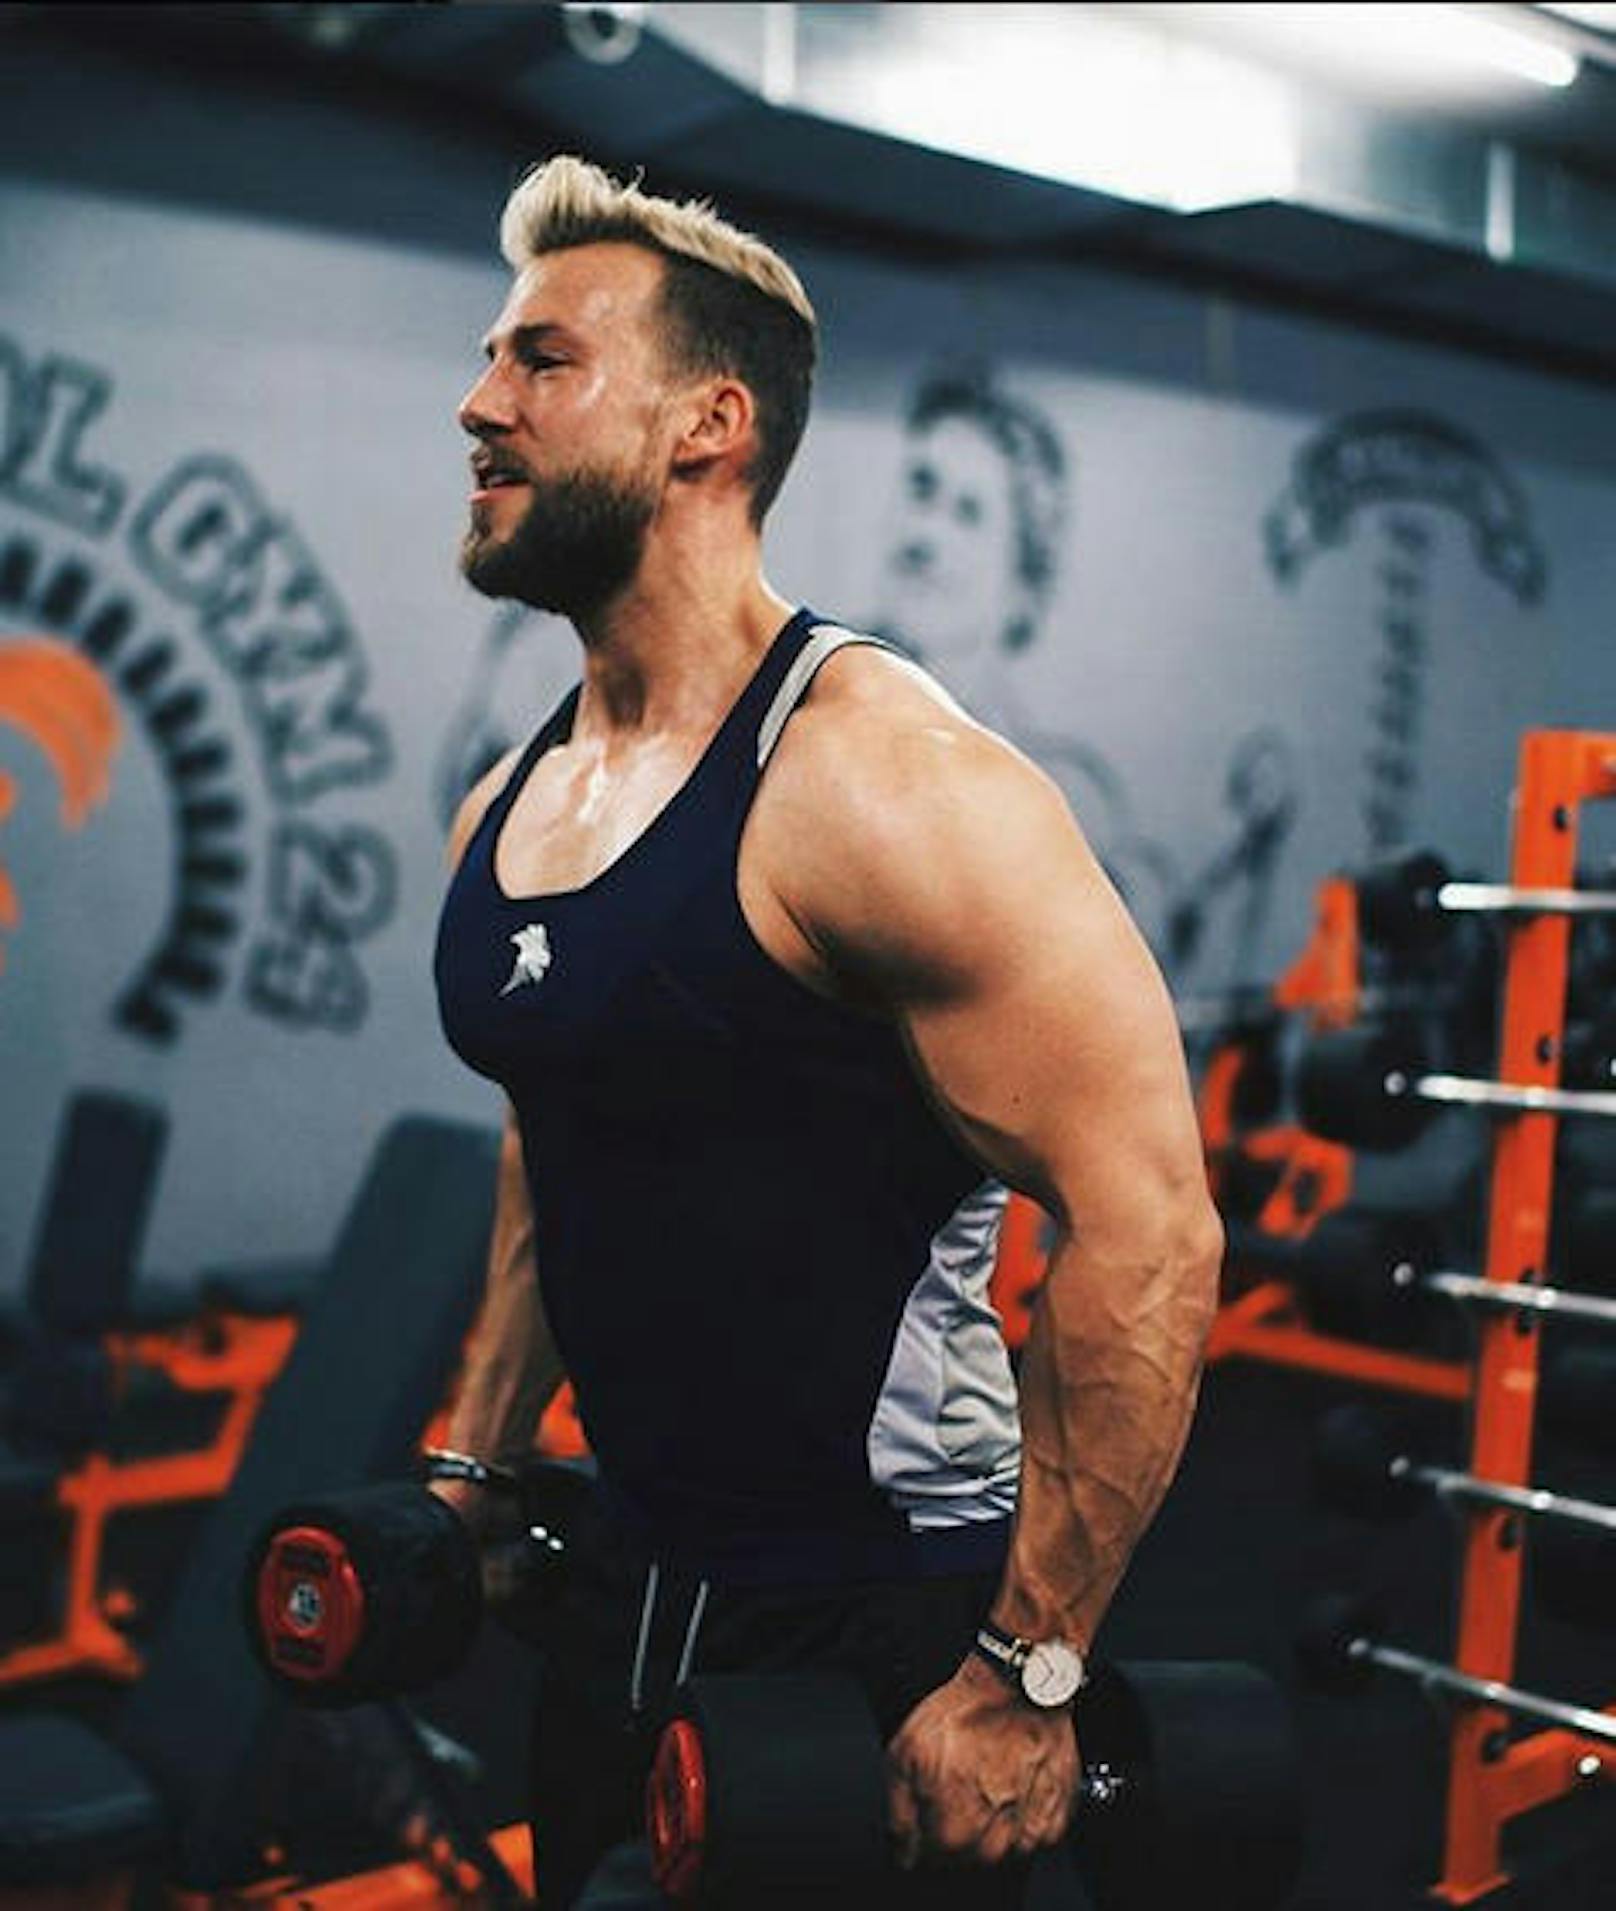 Der Veganer Patrick Reiser ist zweifacher Schweizer Meister und Weltmeister im Natural Bodybuilding. <a href="https://www.instagram.com/patrick.reiser/?hl=de">www.instagram.com/Patrick.Reiser</a>